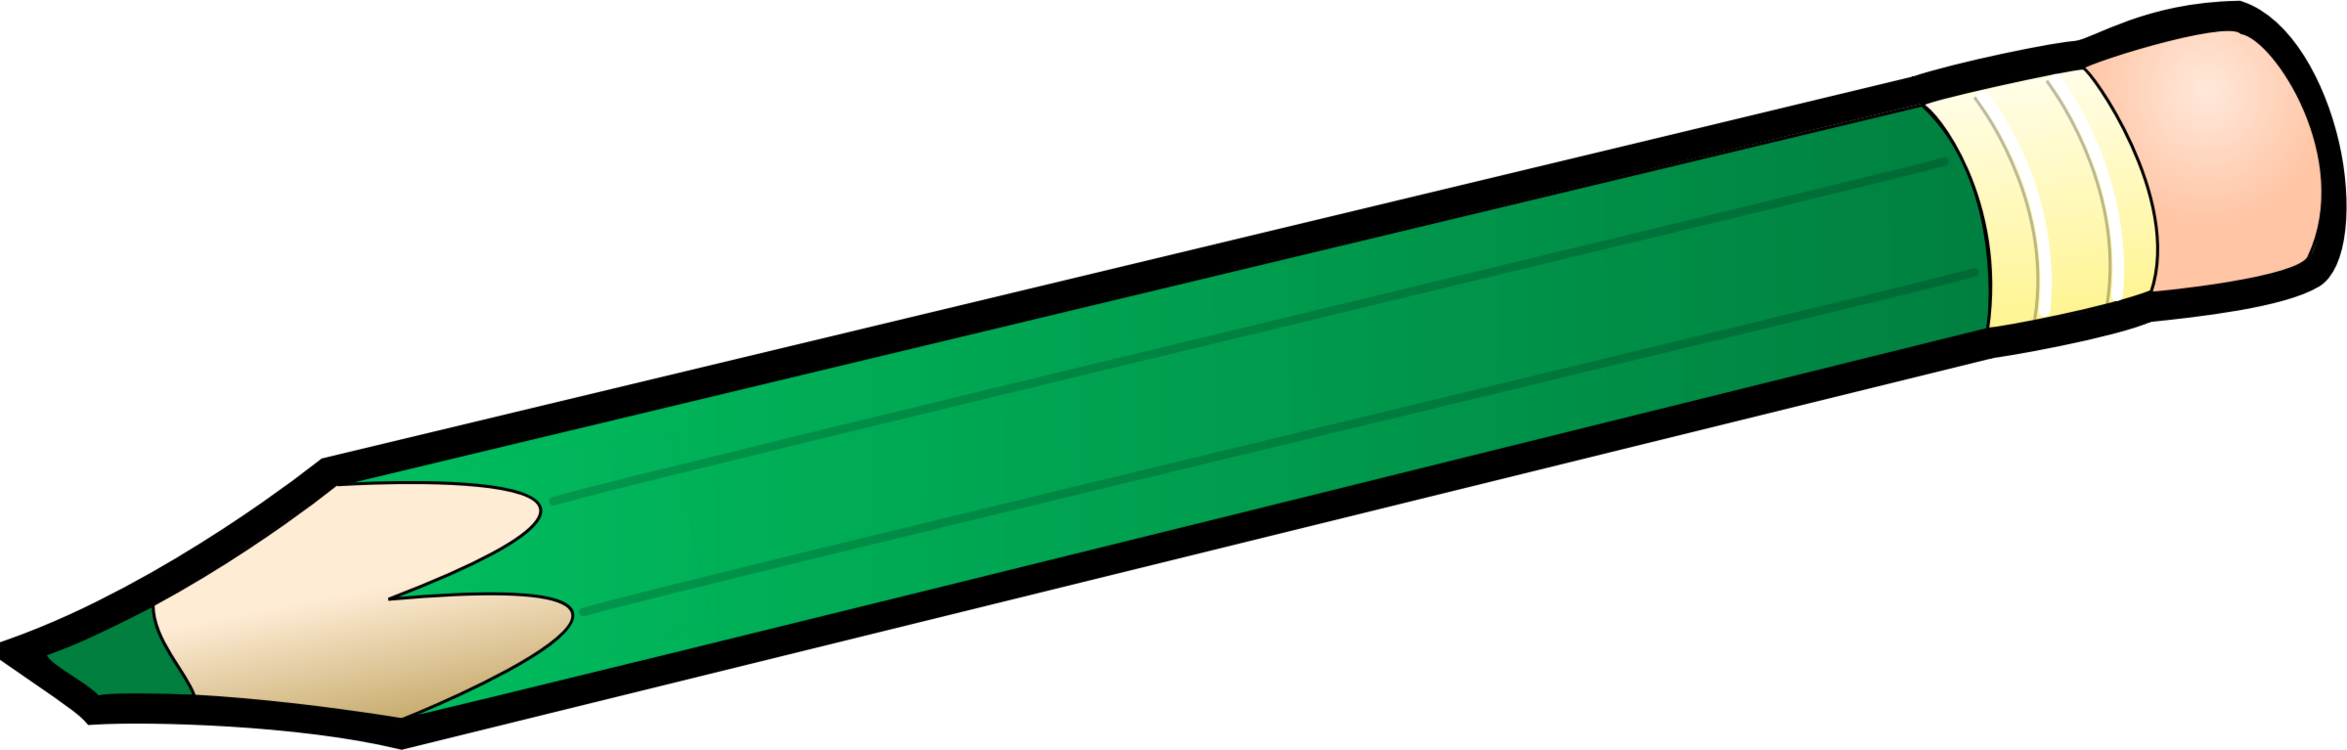 Angle,Line,Green